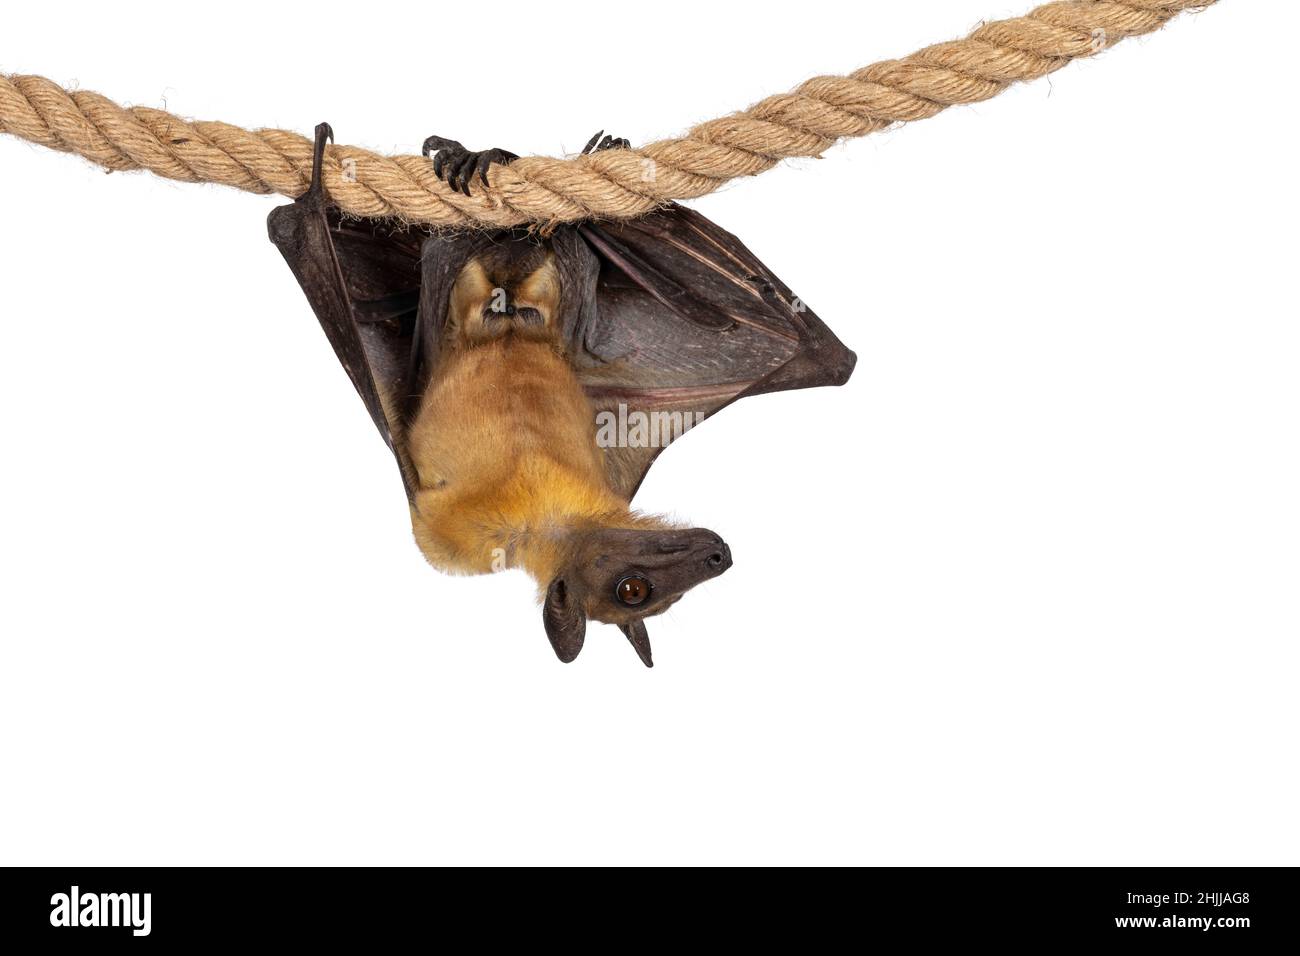 Junger erwachsener Flughund, Fruchtfledermaus alias Megabat von chiroptera, hängend mit der Kamera auf Sisalseil, beide Flügel gefaltet. Blick zur Seite weg von Stockfoto